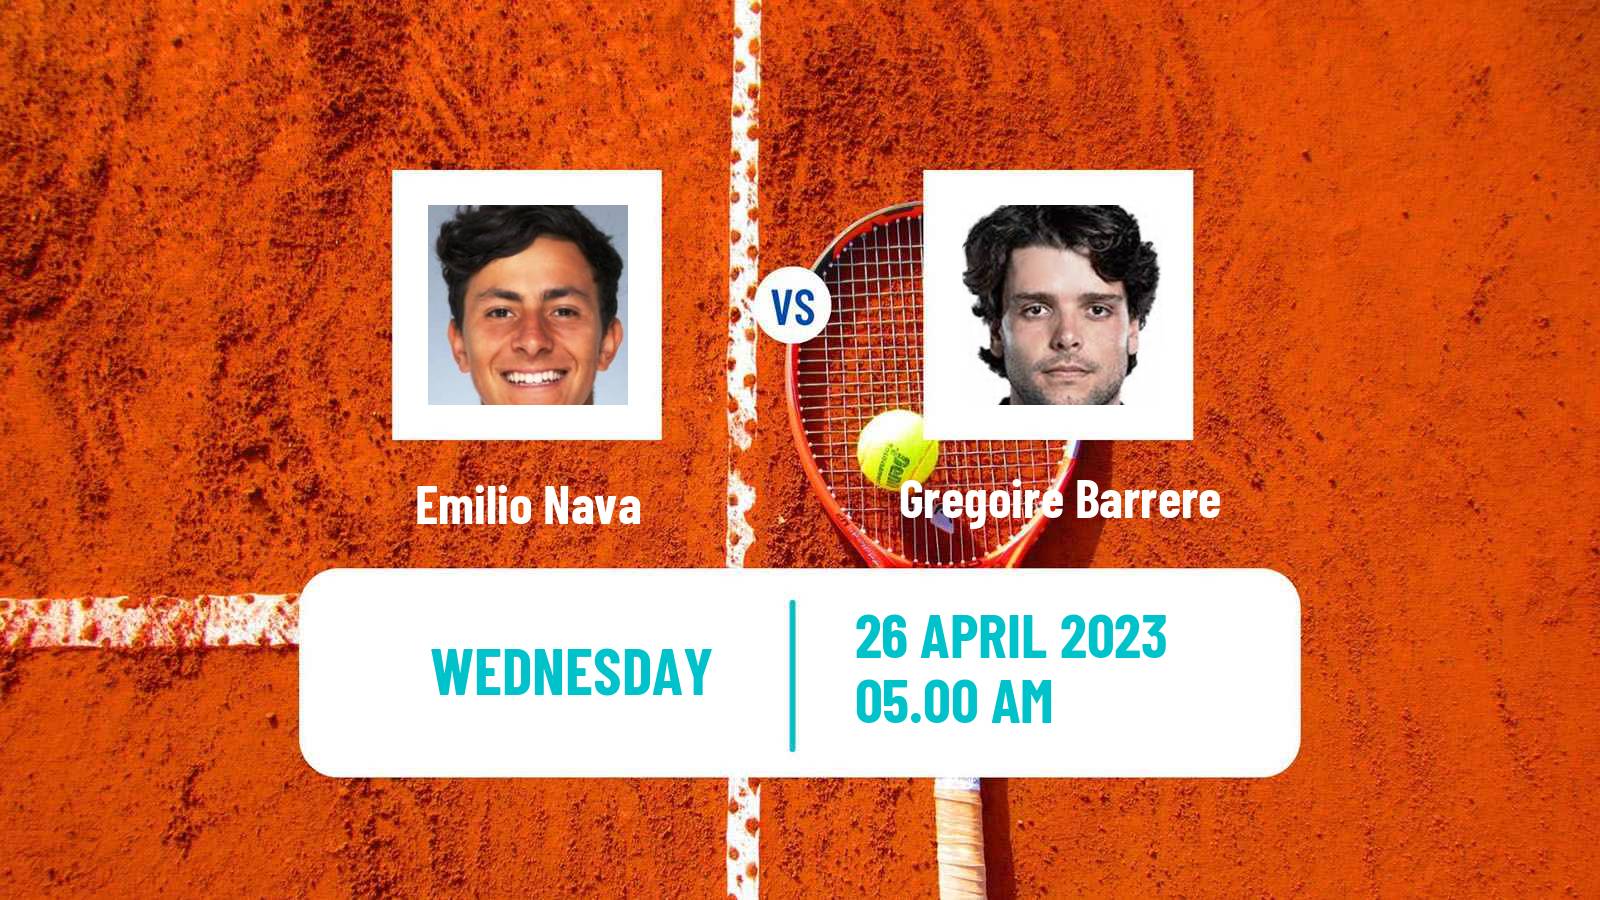 Tennis ATP Madrid Emilio Nava - Gregoire Barrere